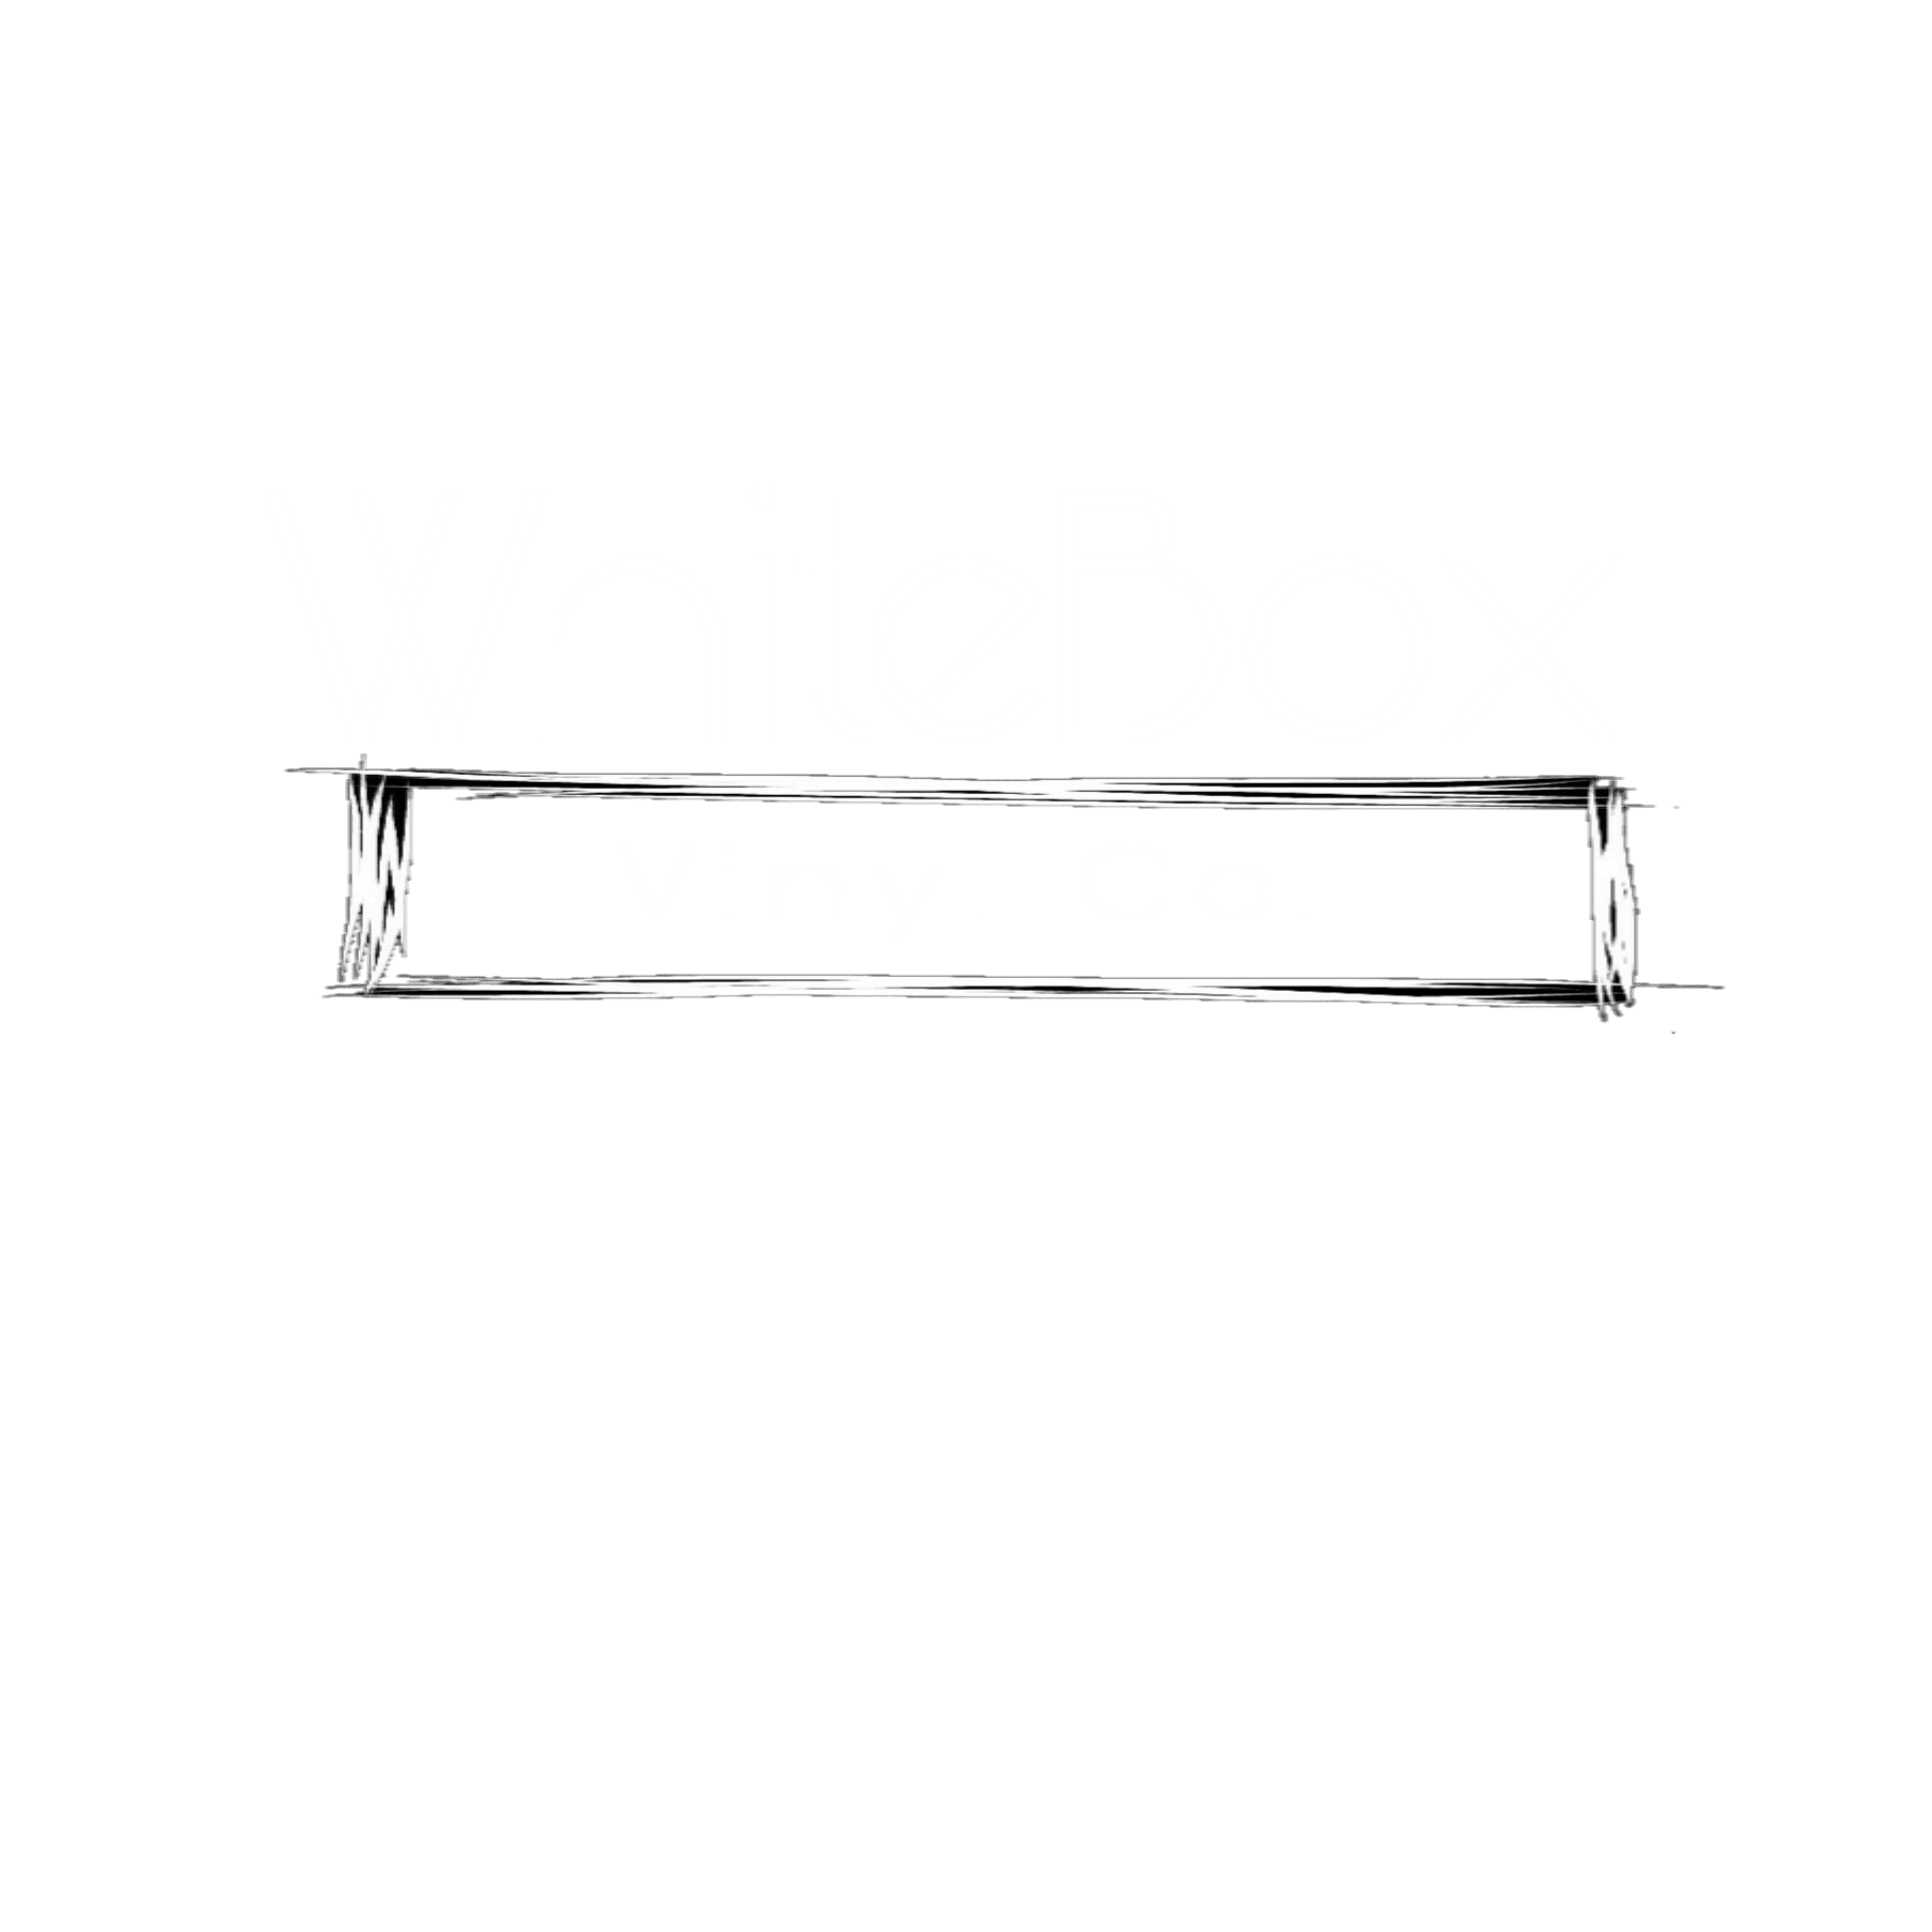 White Box Vinyl